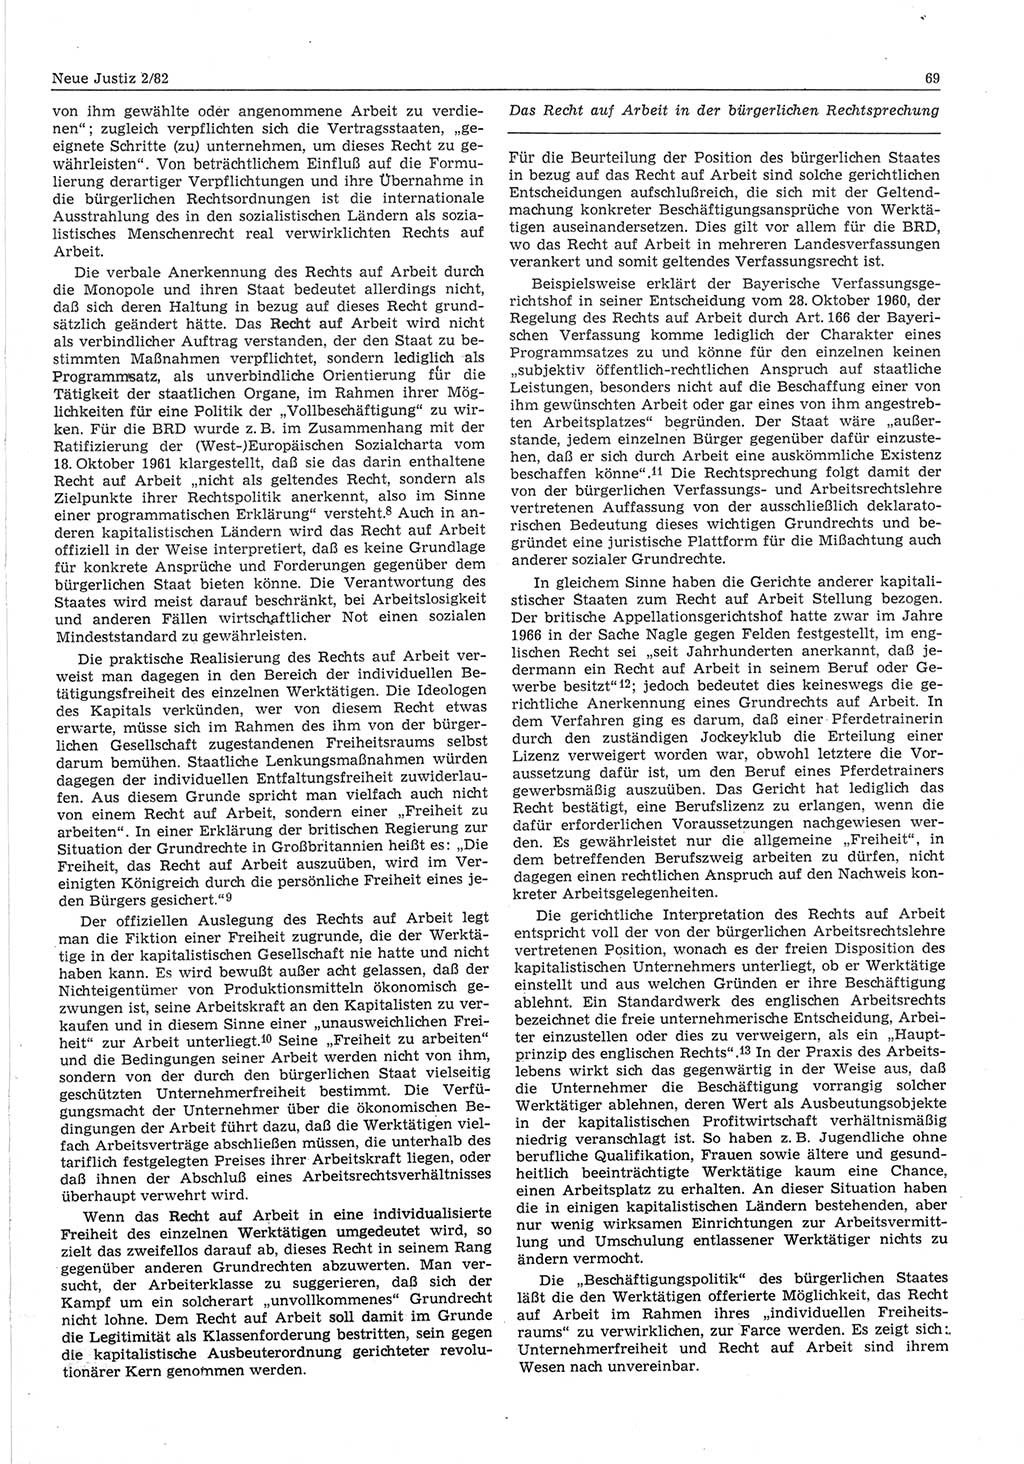 Neue Justiz (NJ), Zeitschrift für sozialistisches Recht und Gesetzlichkeit [Deutsche Demokratische Republik (DDR)], 36. Jahrgang 1982, Seite 69 (NJ DDR 1982, S. 69)